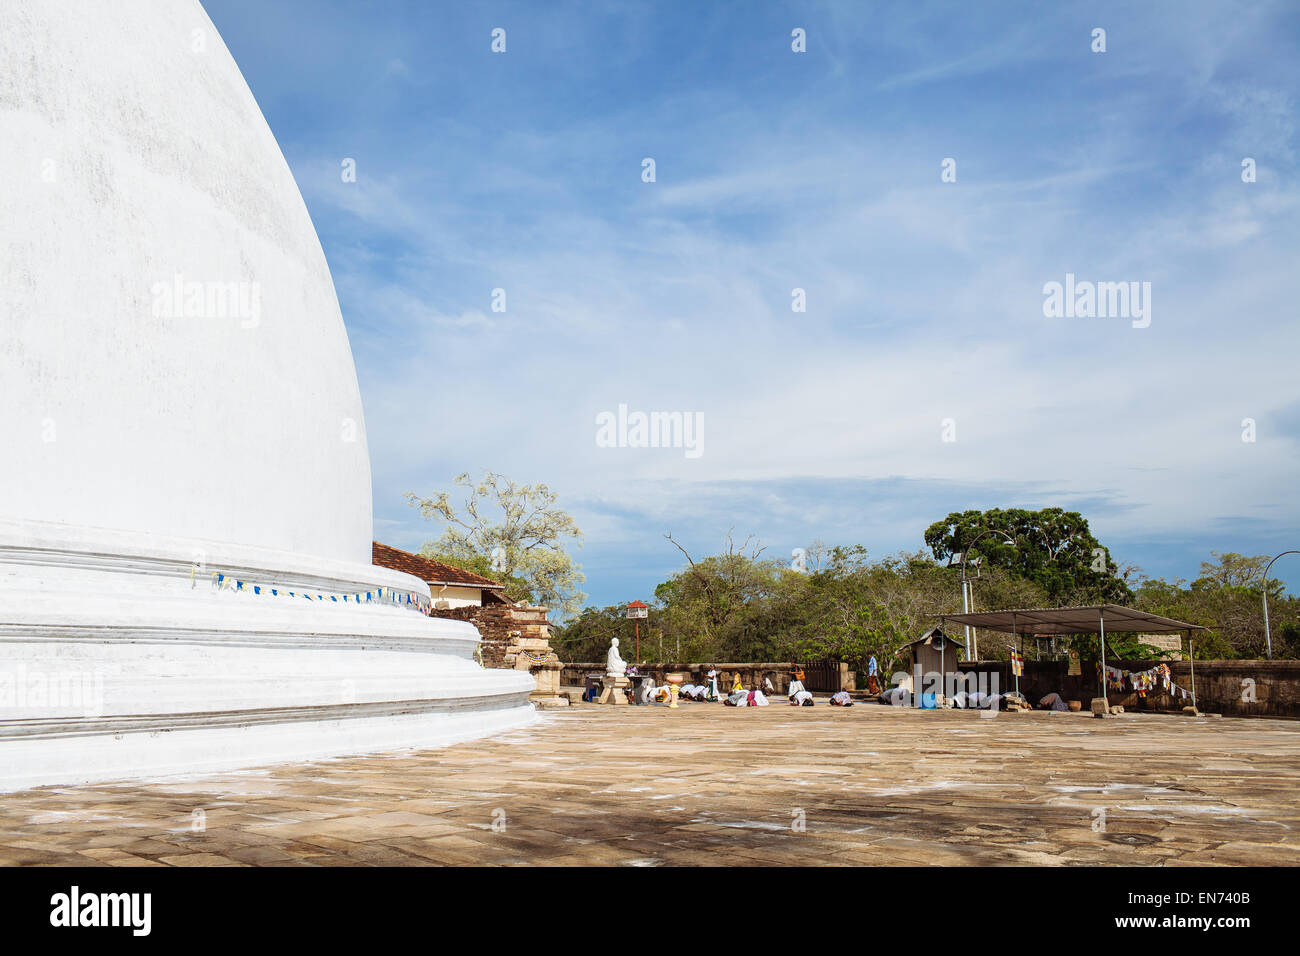 The Mirisavatiya dagoba in the ancient city of Anuradhapura, Sri Lanka. Stock Photo